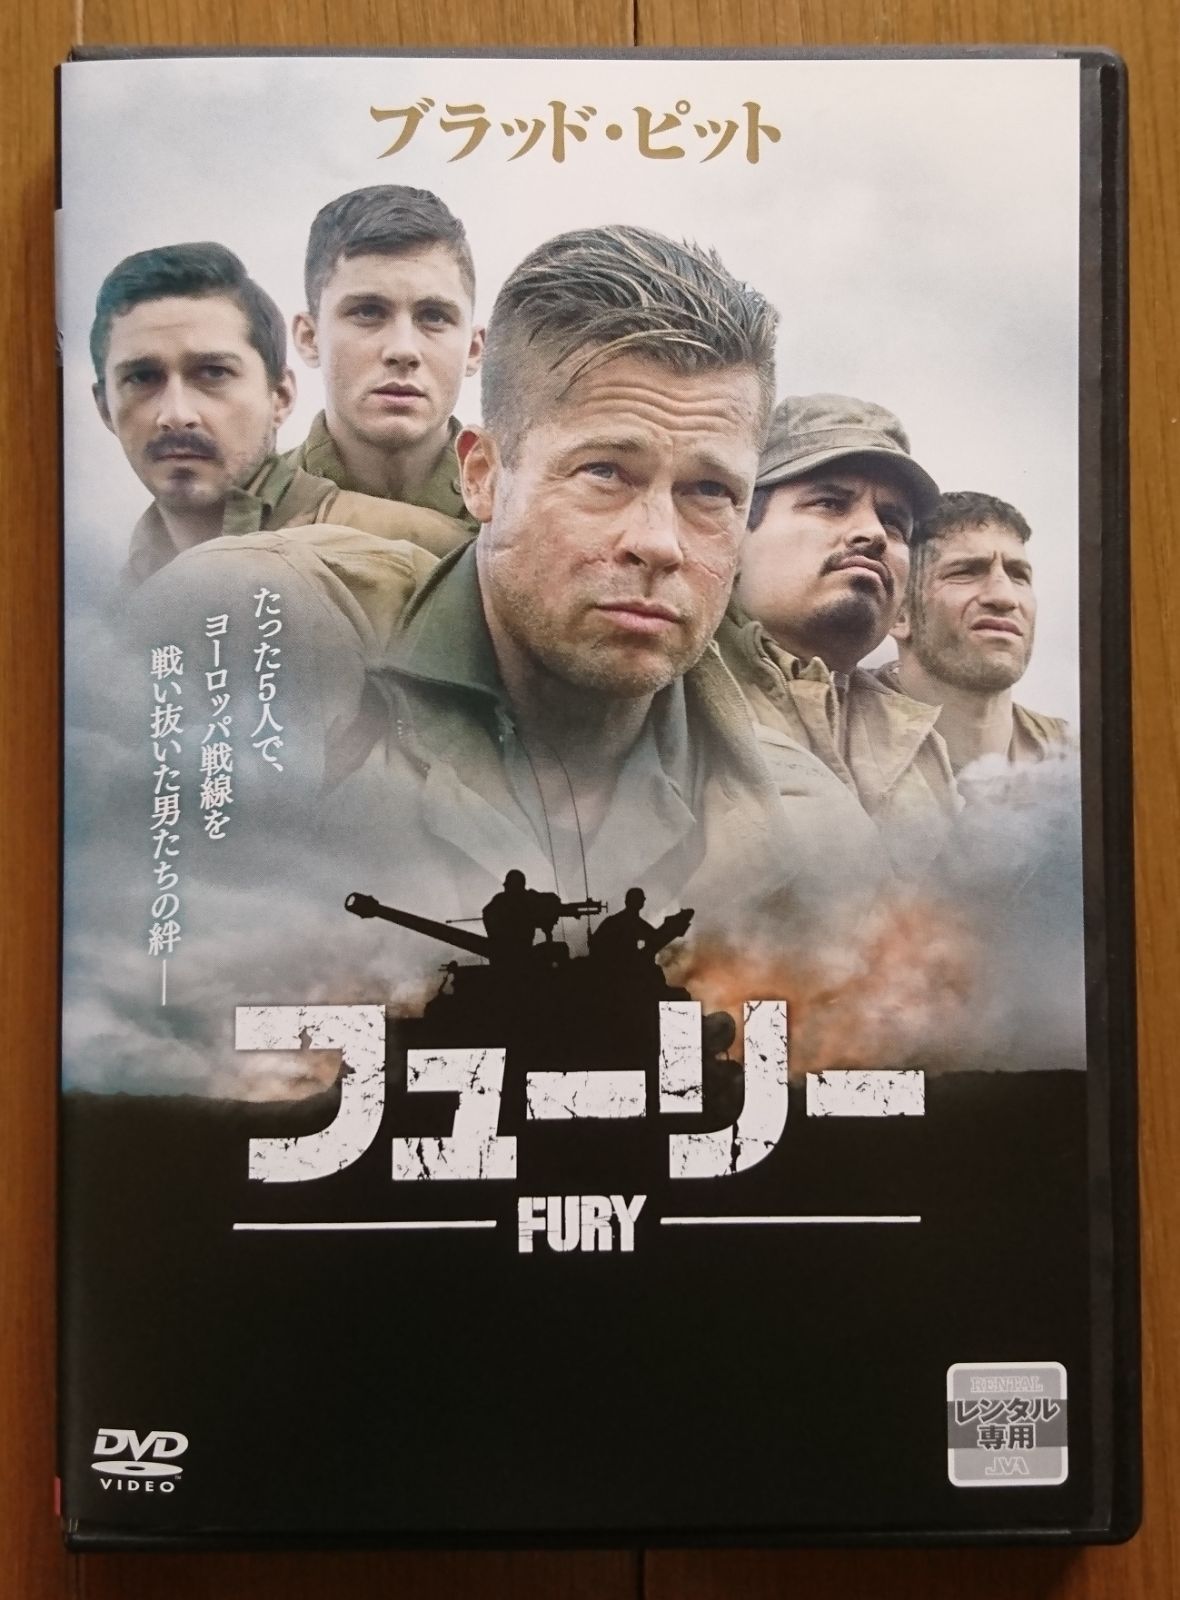 【レンタル版DVD】フューリー -FURY- 出演:ブラッド・ピット